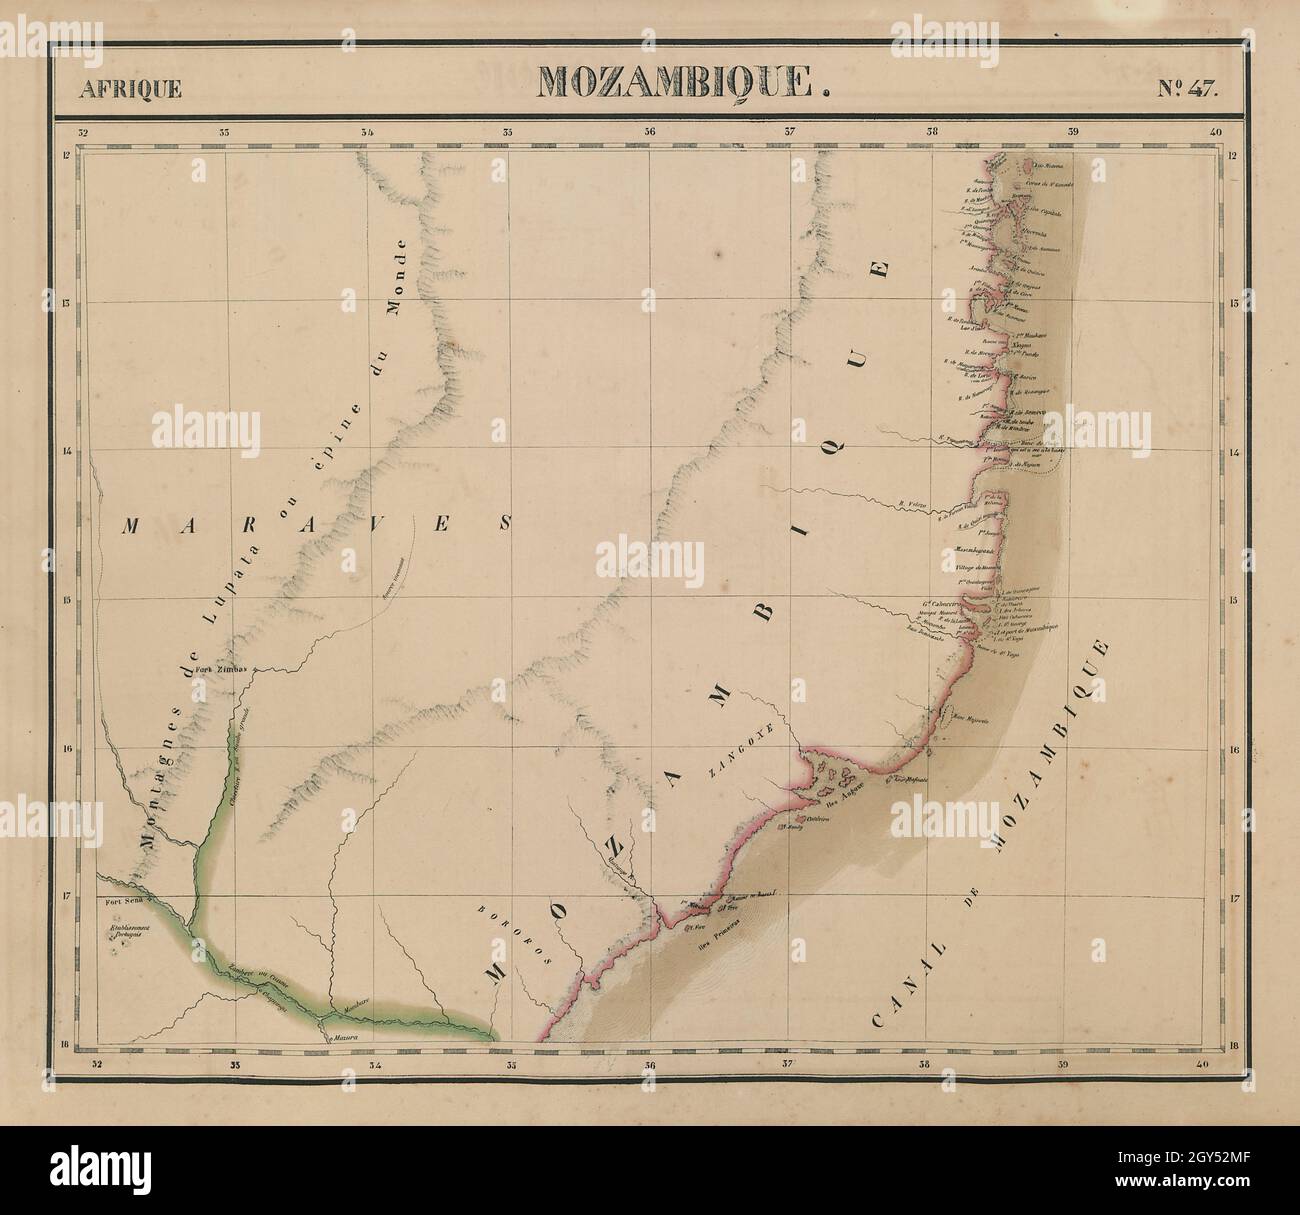 Afrique. Mozambico #47. Mozambico settentrionale. VANDERMAELEN 1827 vecchia mappa Foto Stock